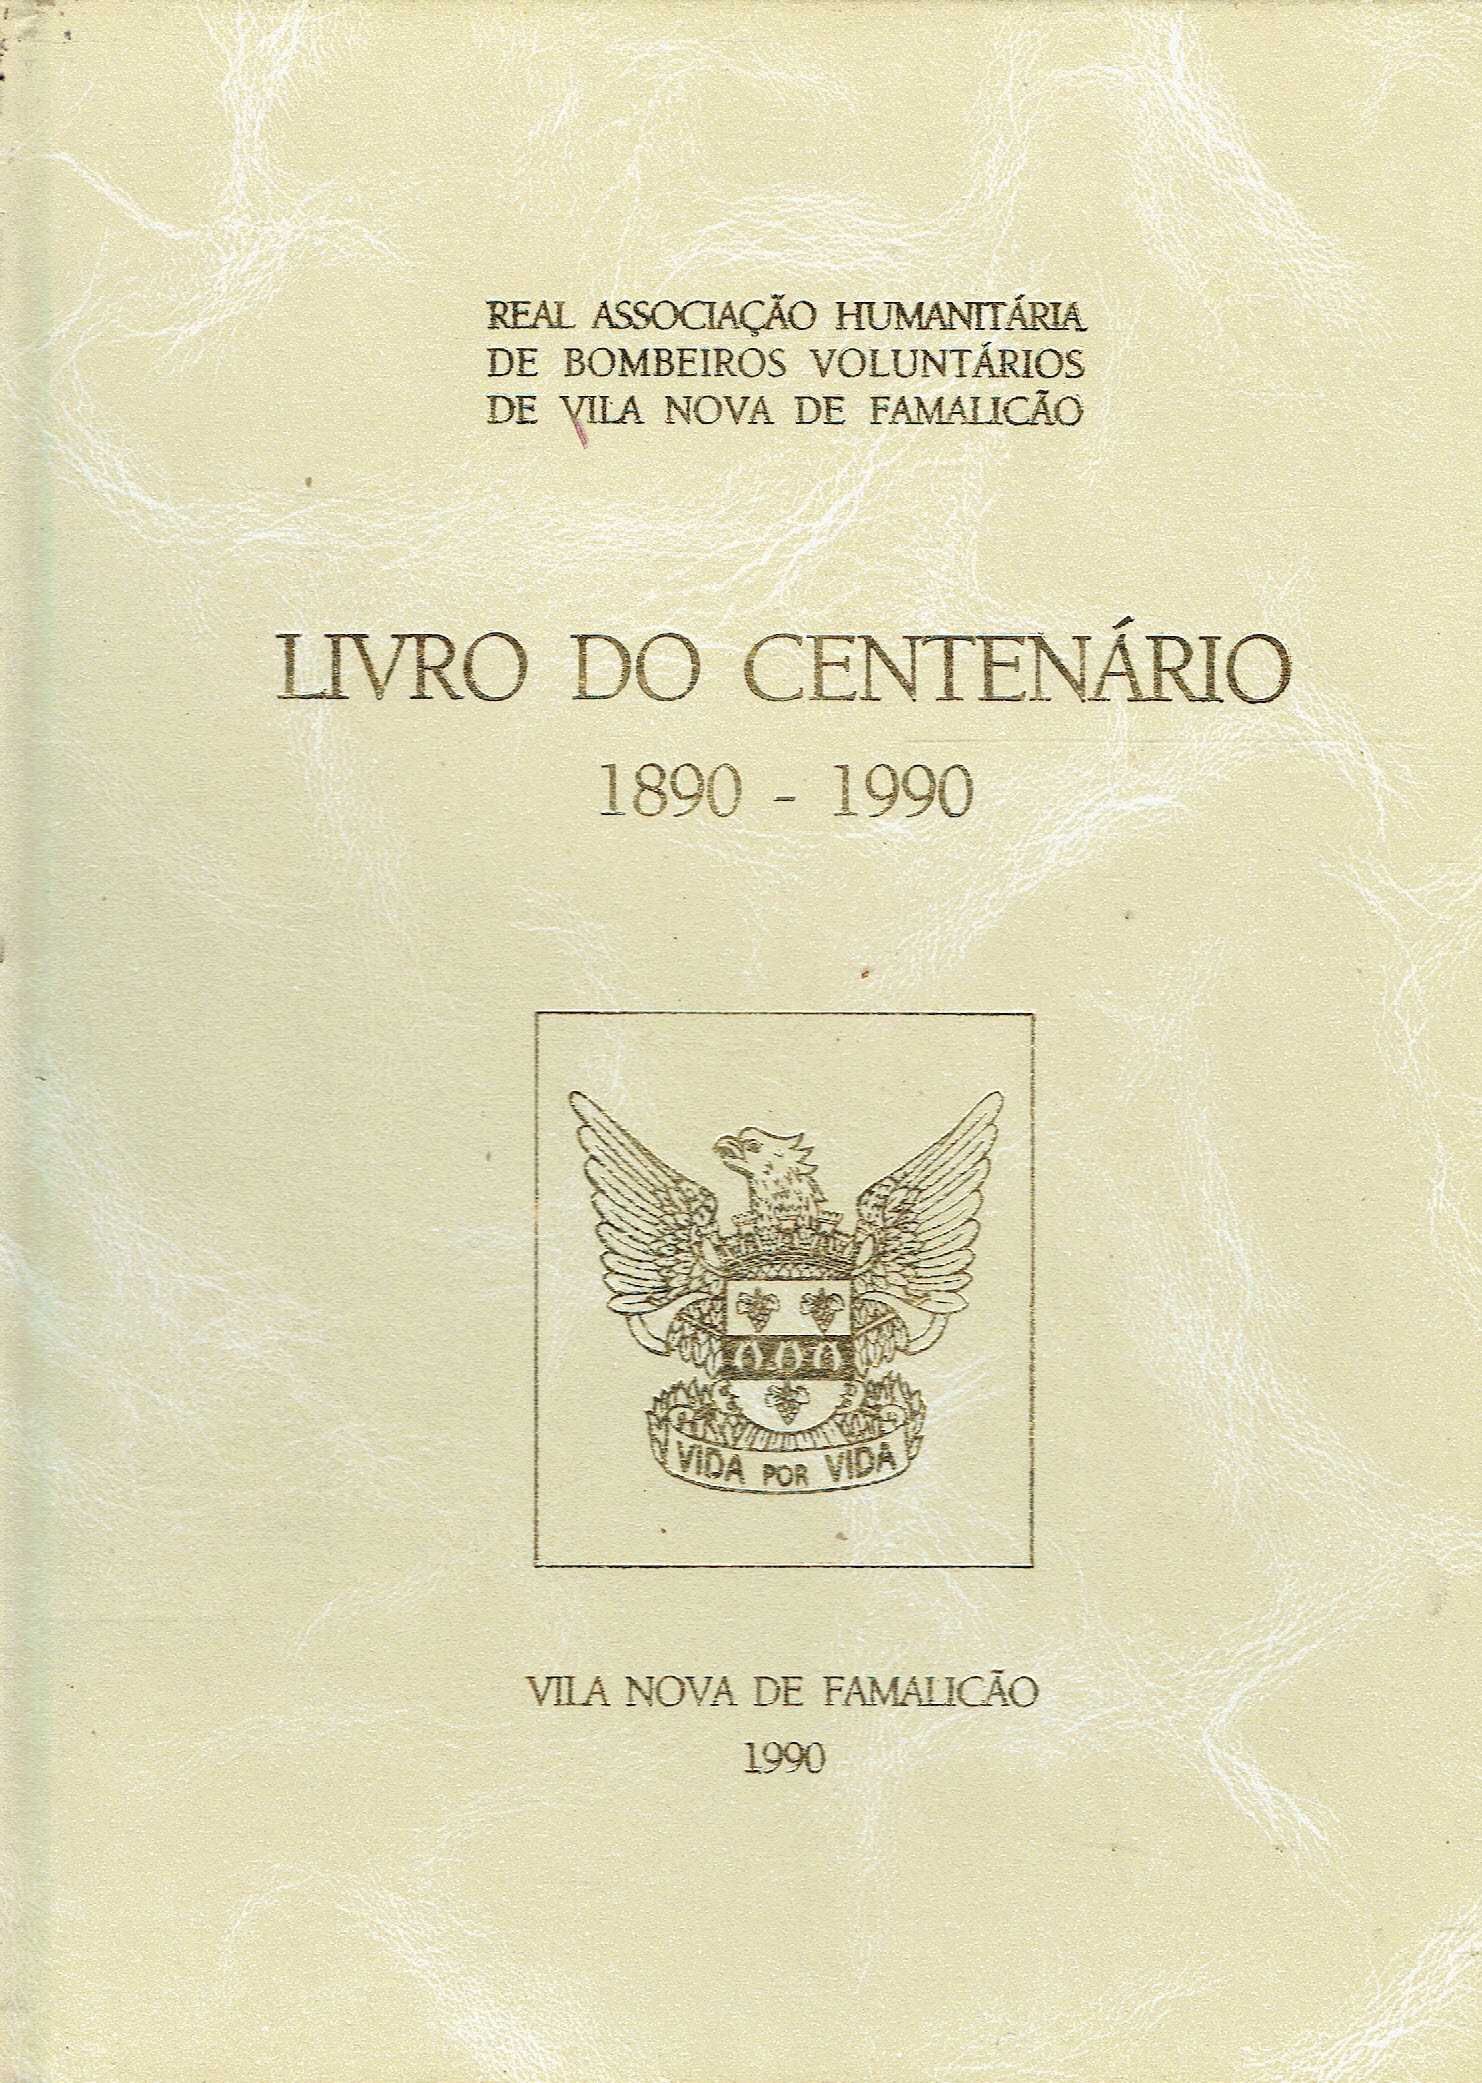 688
Livro do centenário: 1890/1990
de Bombeiros de Vila N de Famalicão